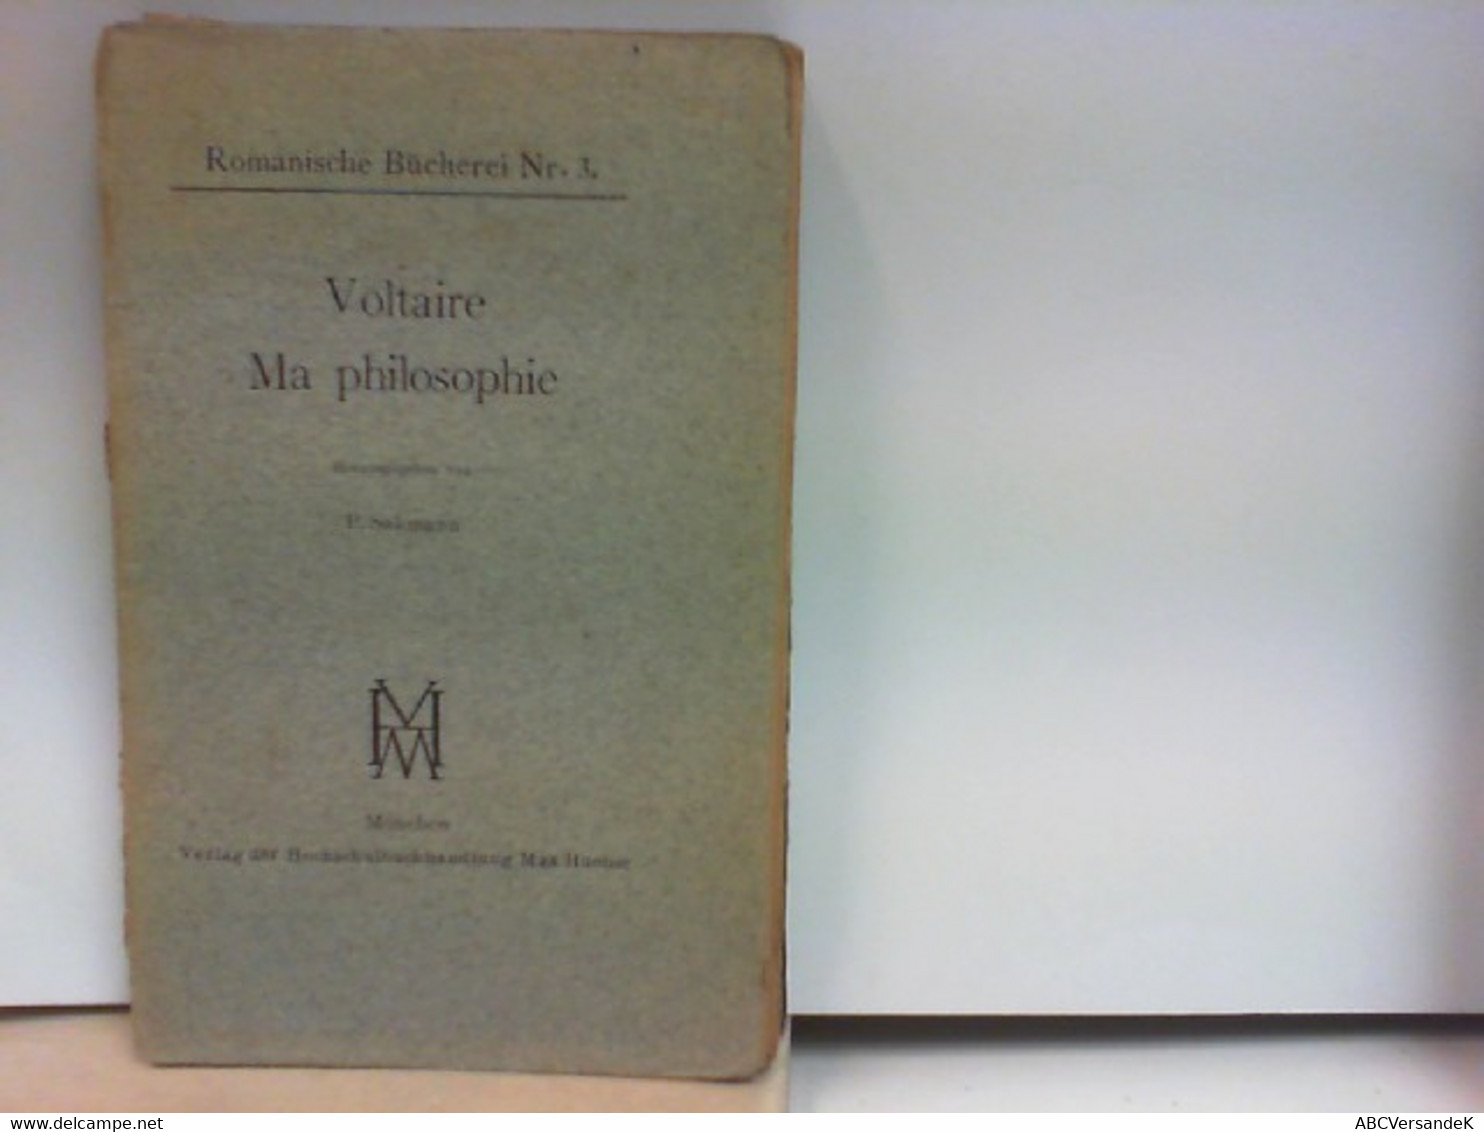 Voltaire - Ma Philosophie - Romanische Bücherei Nr. 3 - Philosophie